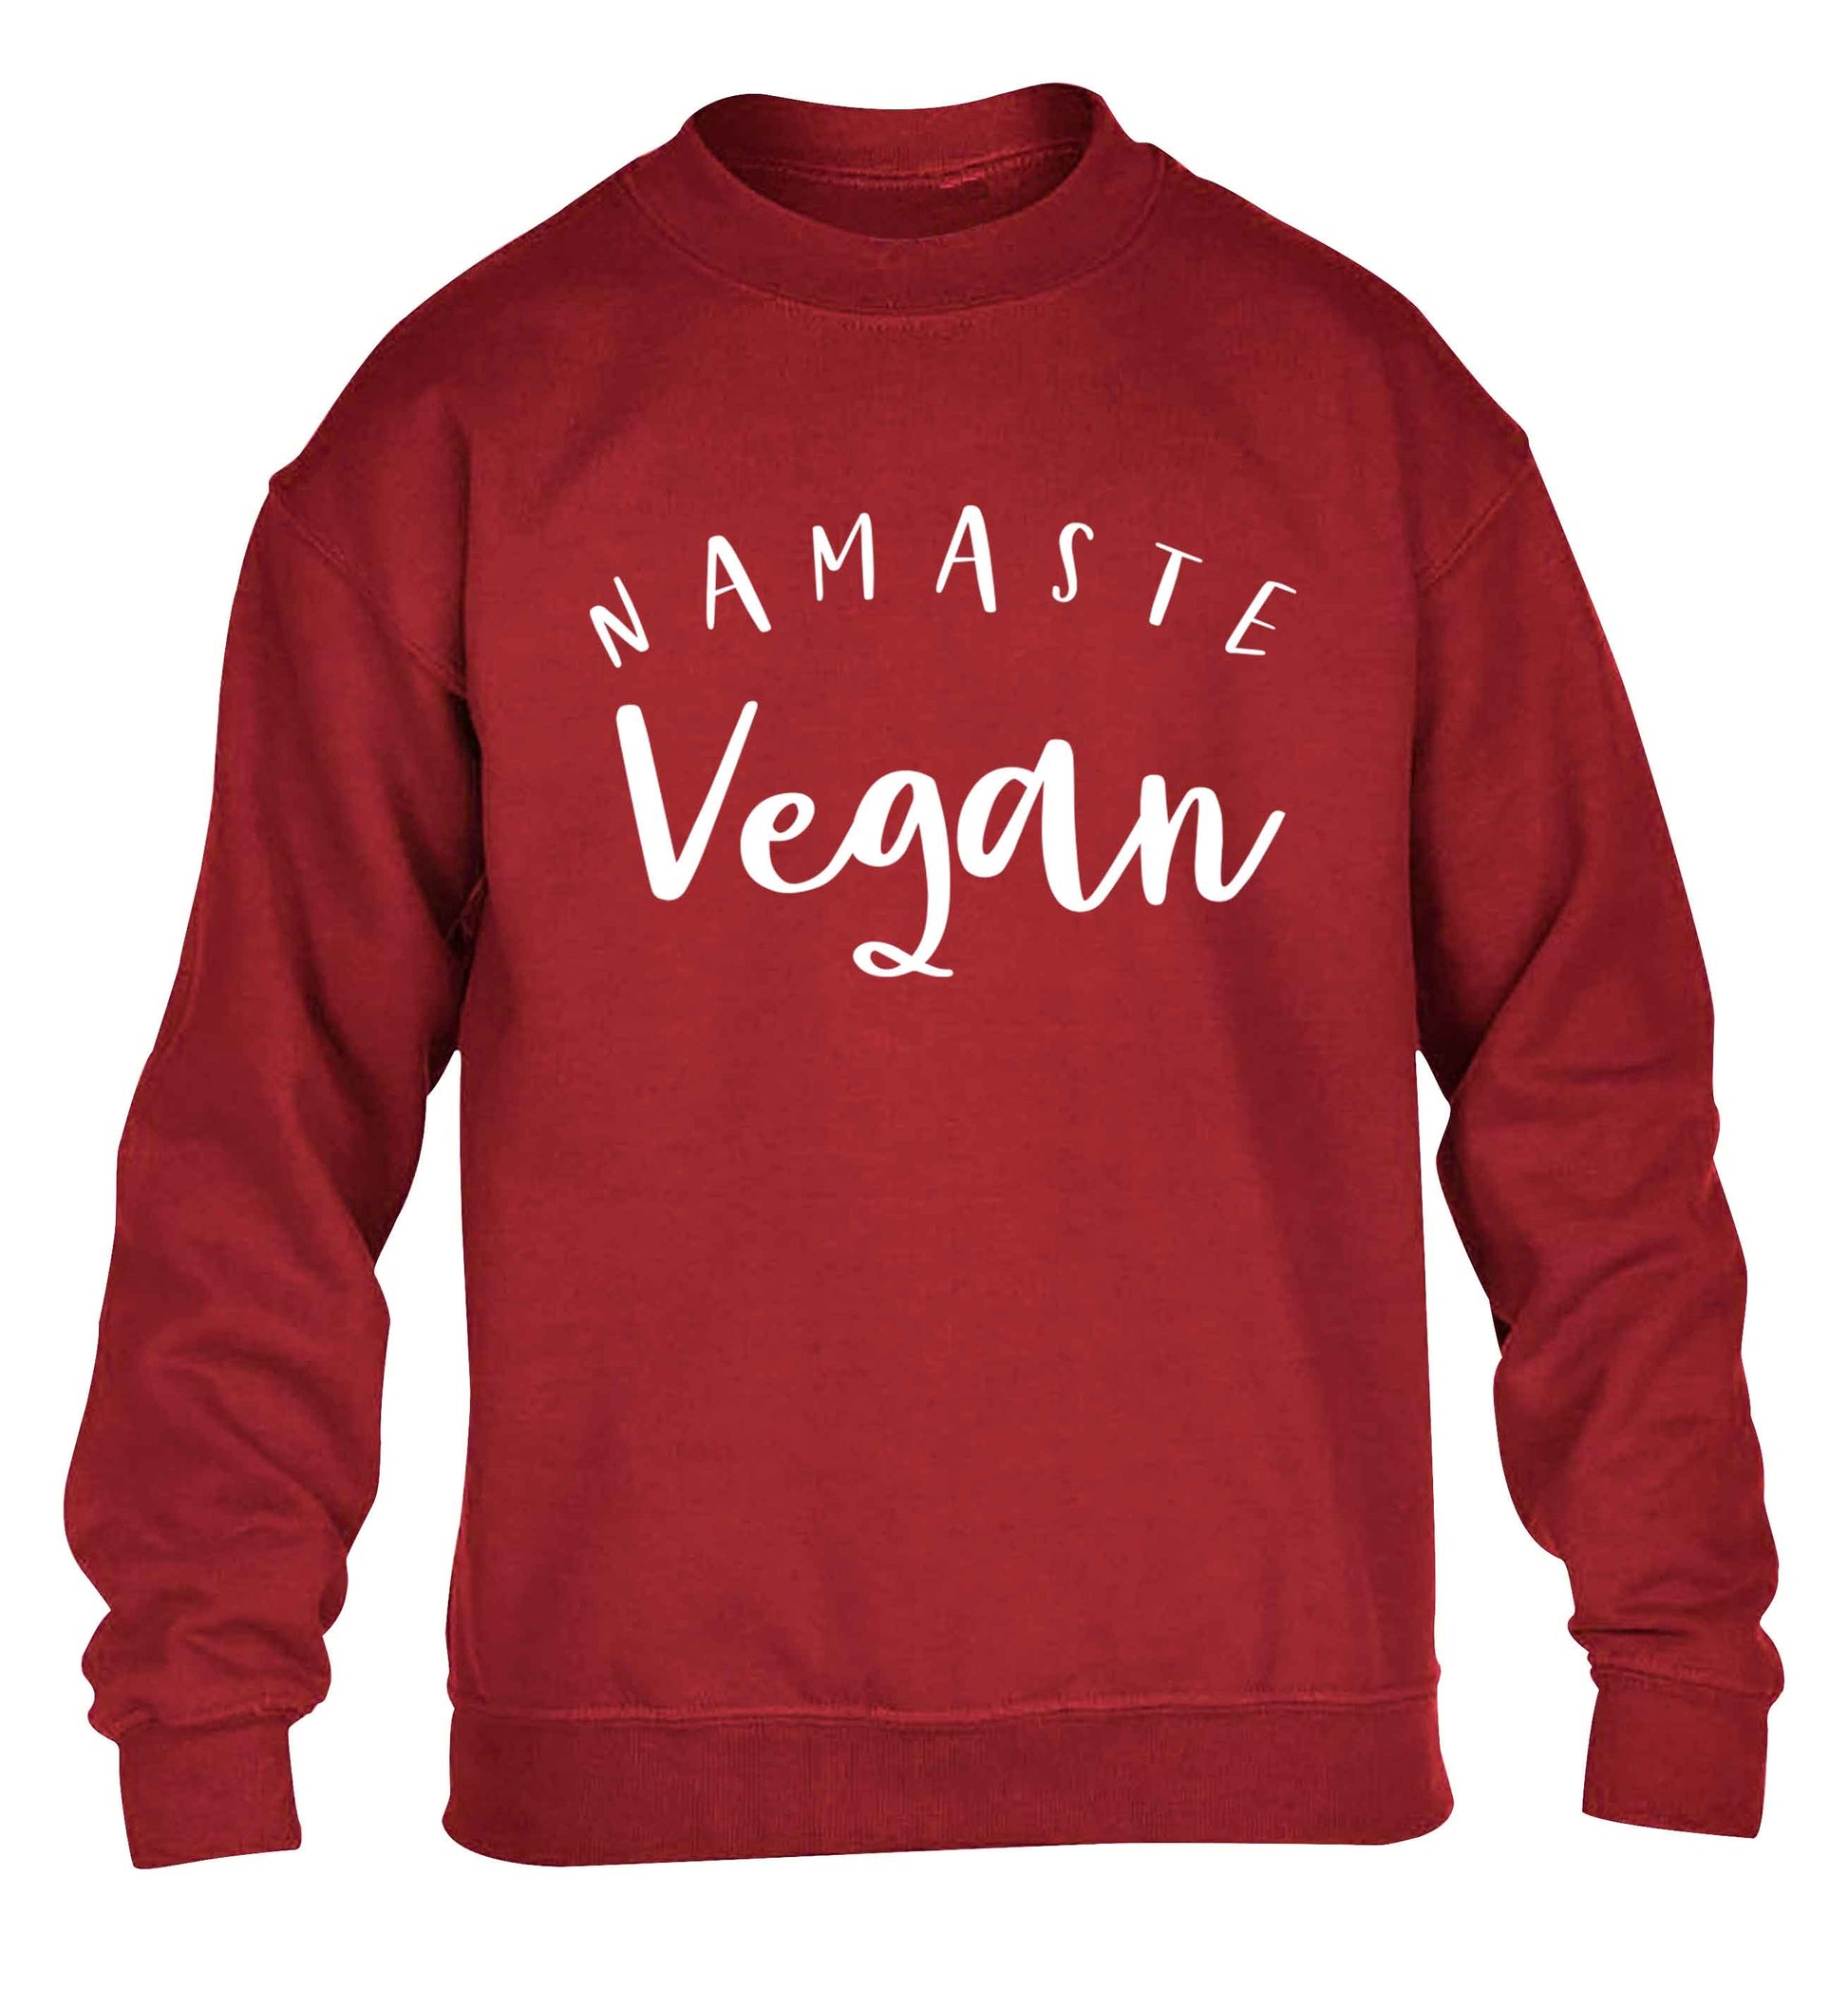 Namaste vegan children's grey sweater 12-13 Years